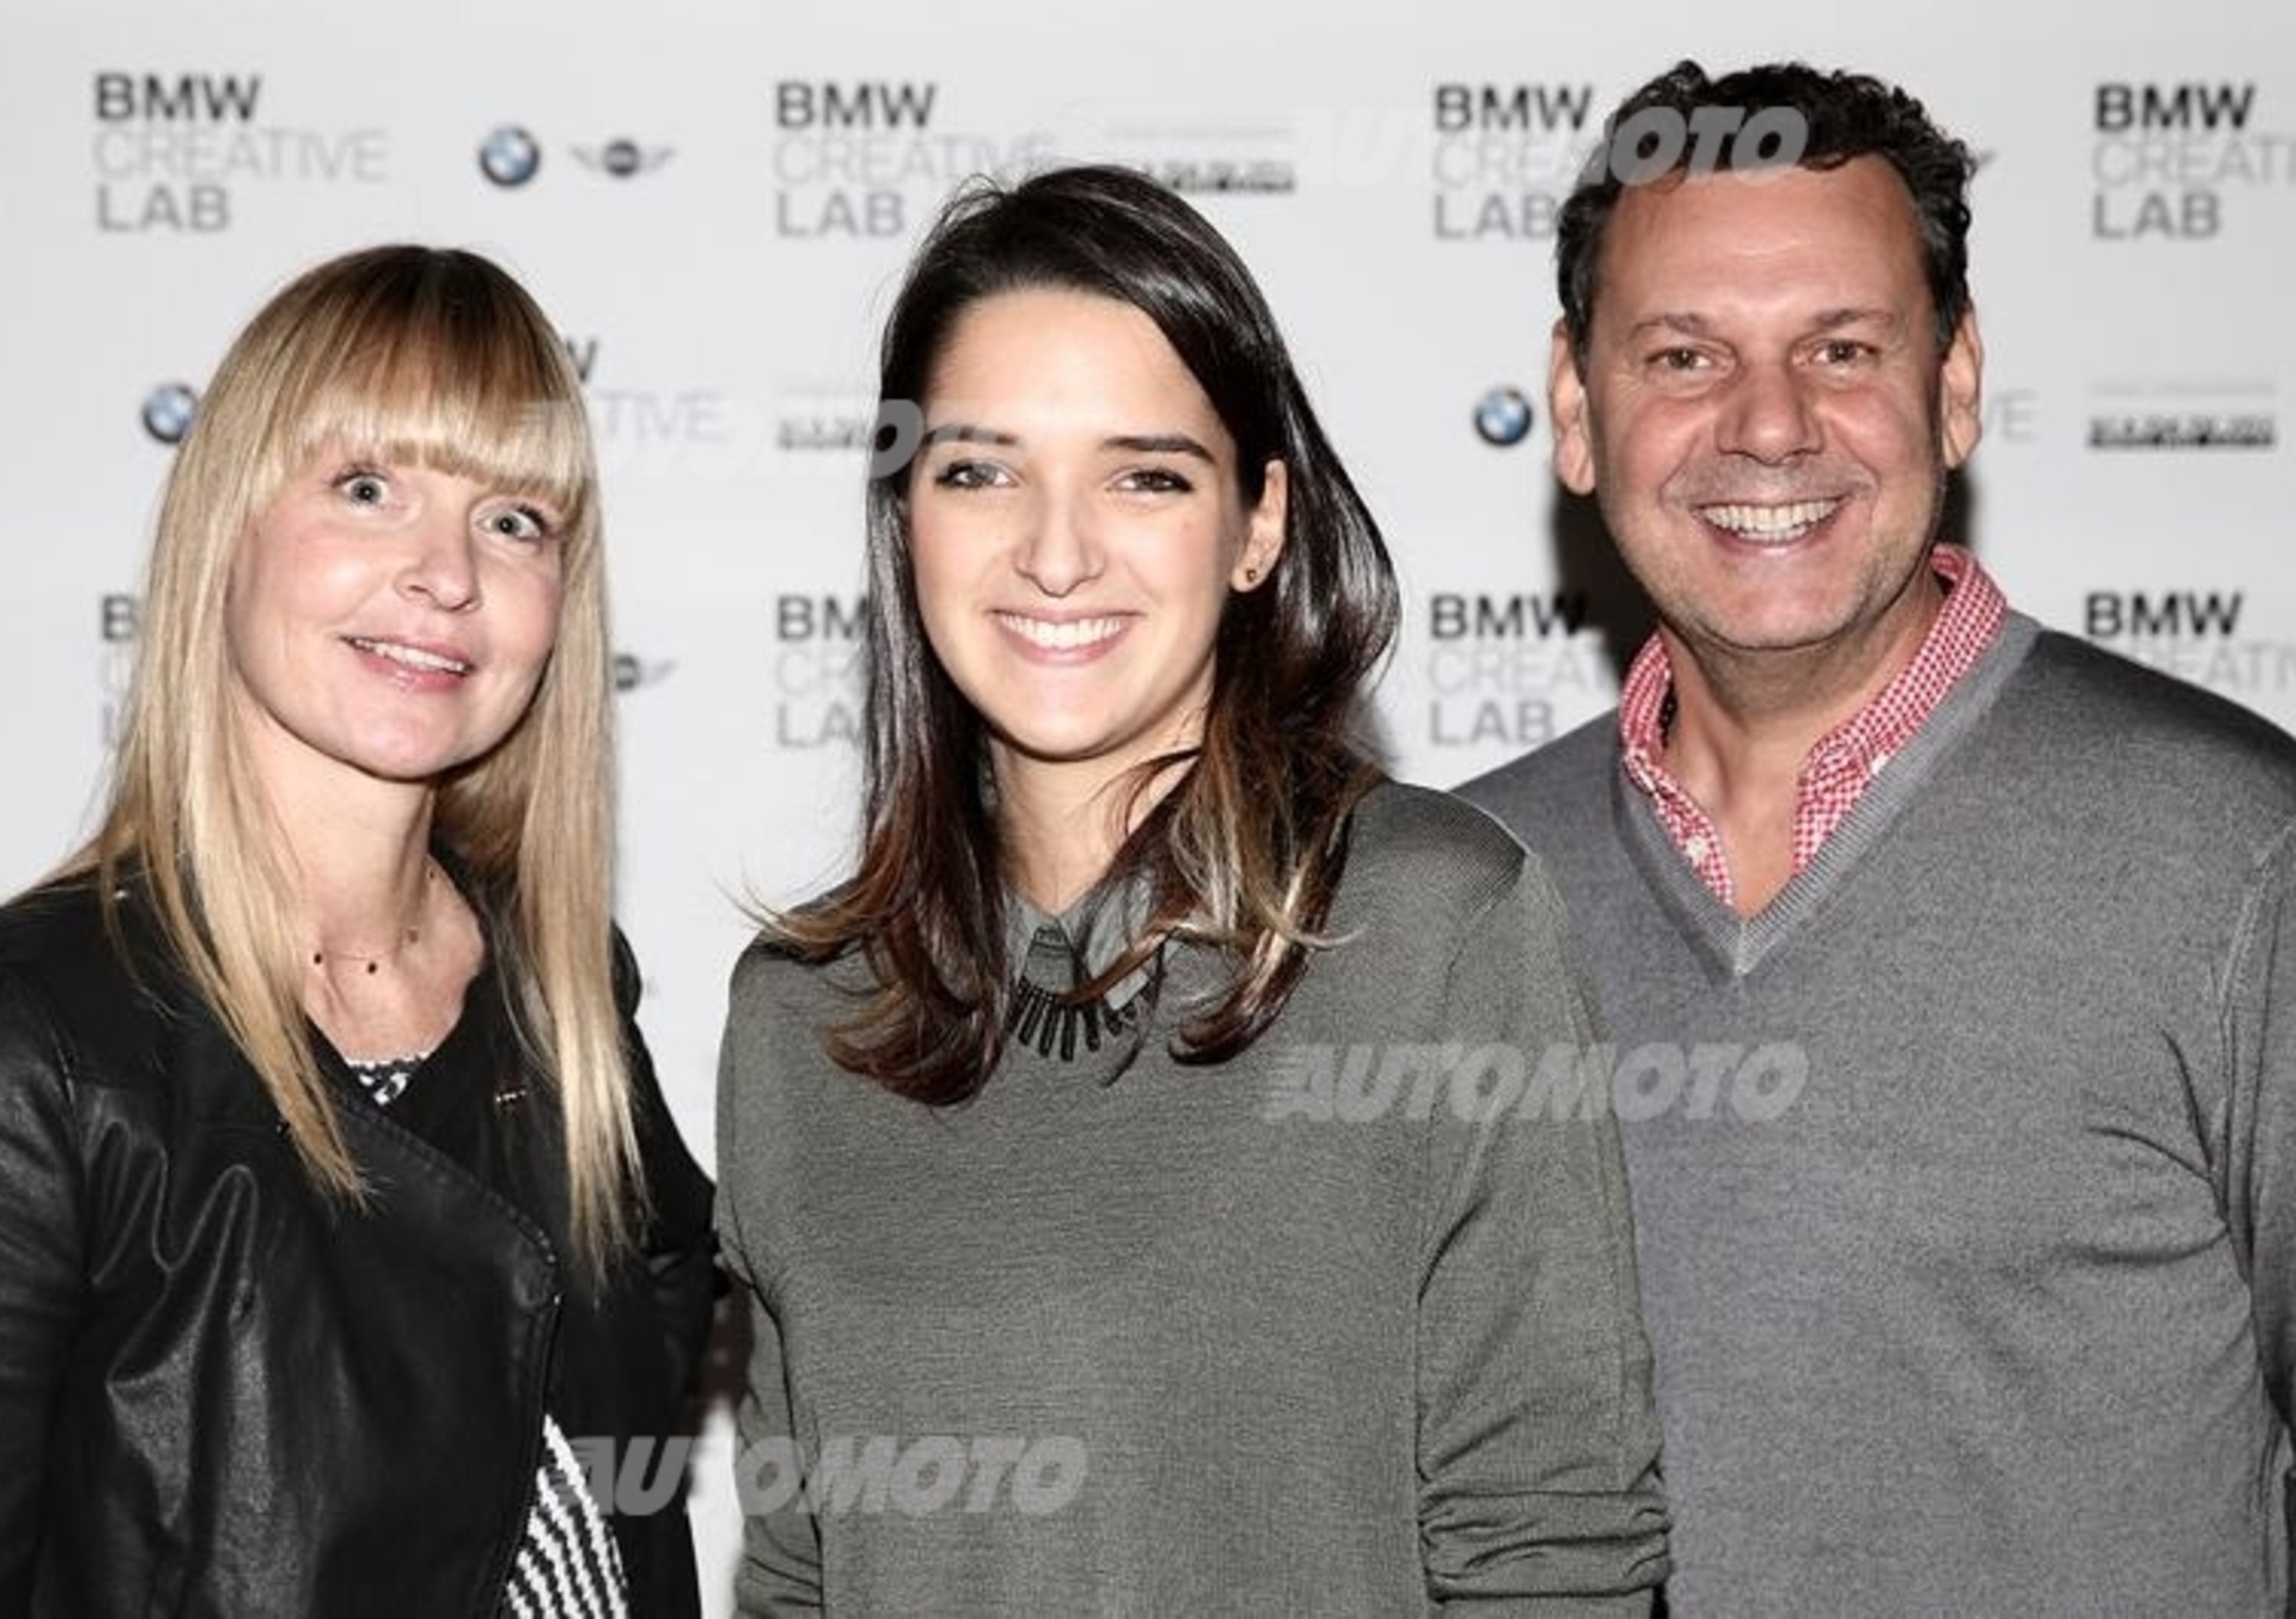 BMW Creative Lab 2014: vince Serena Bonomi con una giacca da far girare la testa